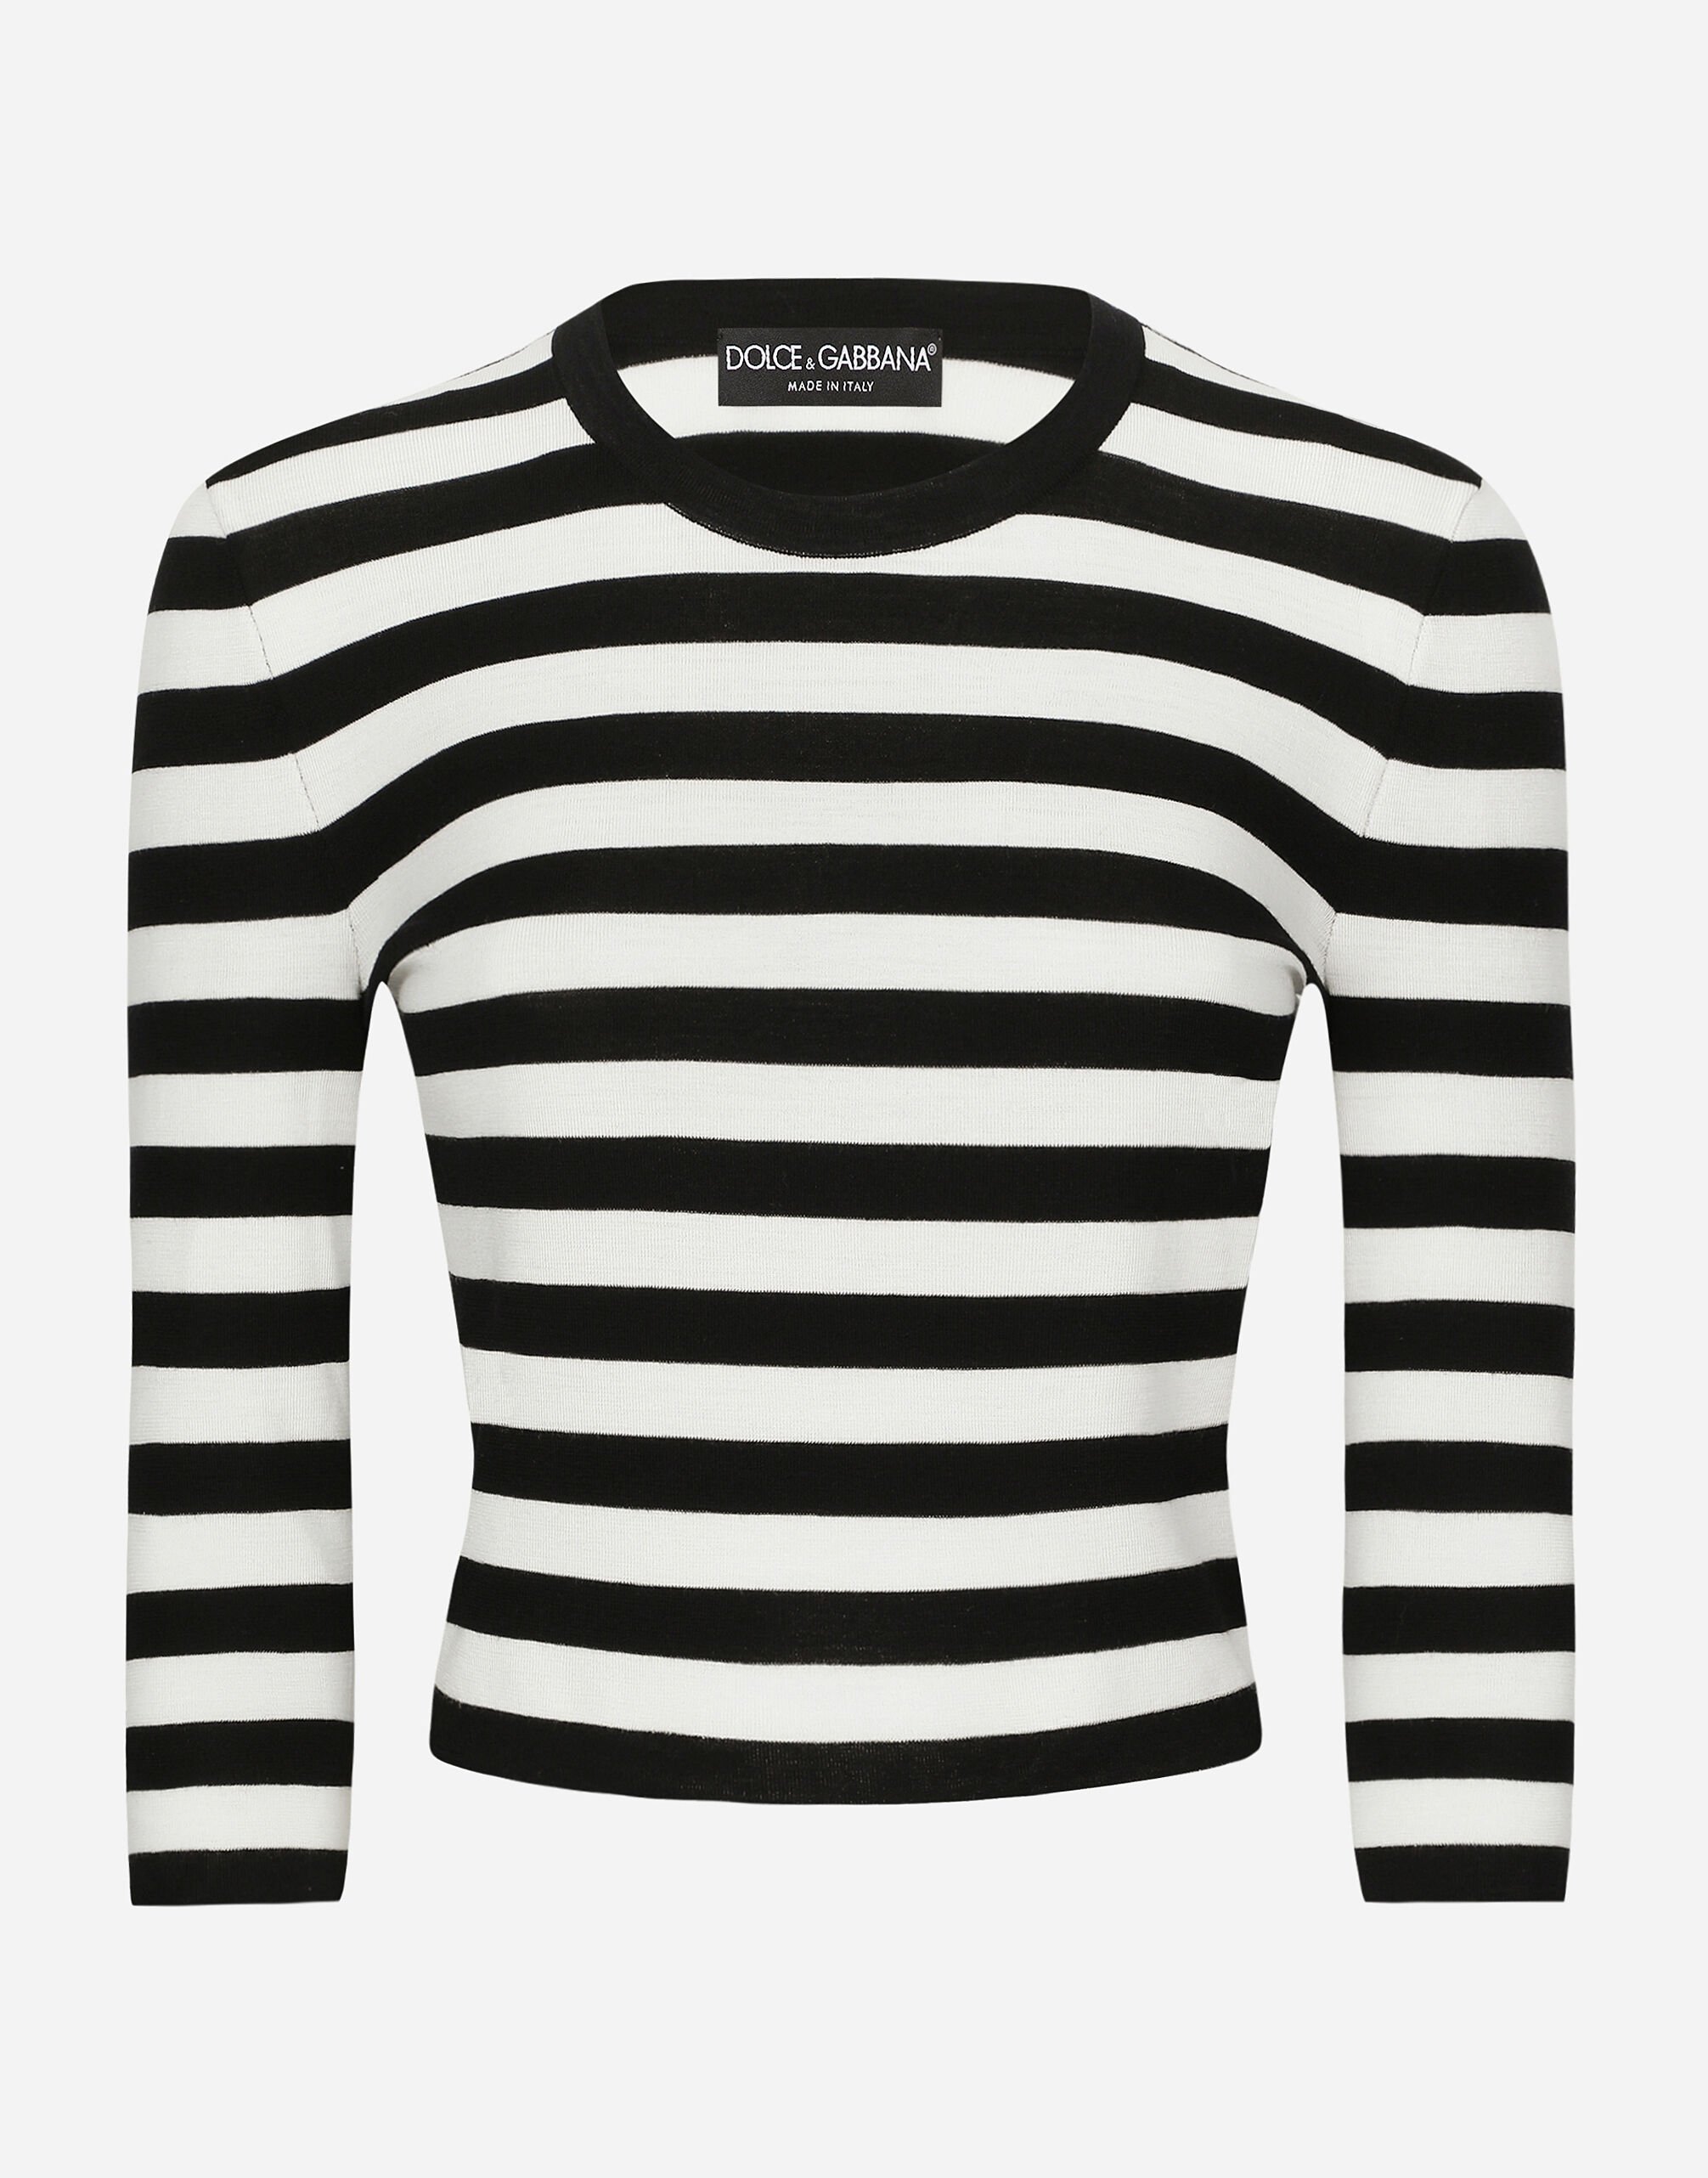 Dolce & Gabbana Wool sweater in inlaid stripes Print F79FOTFSA64